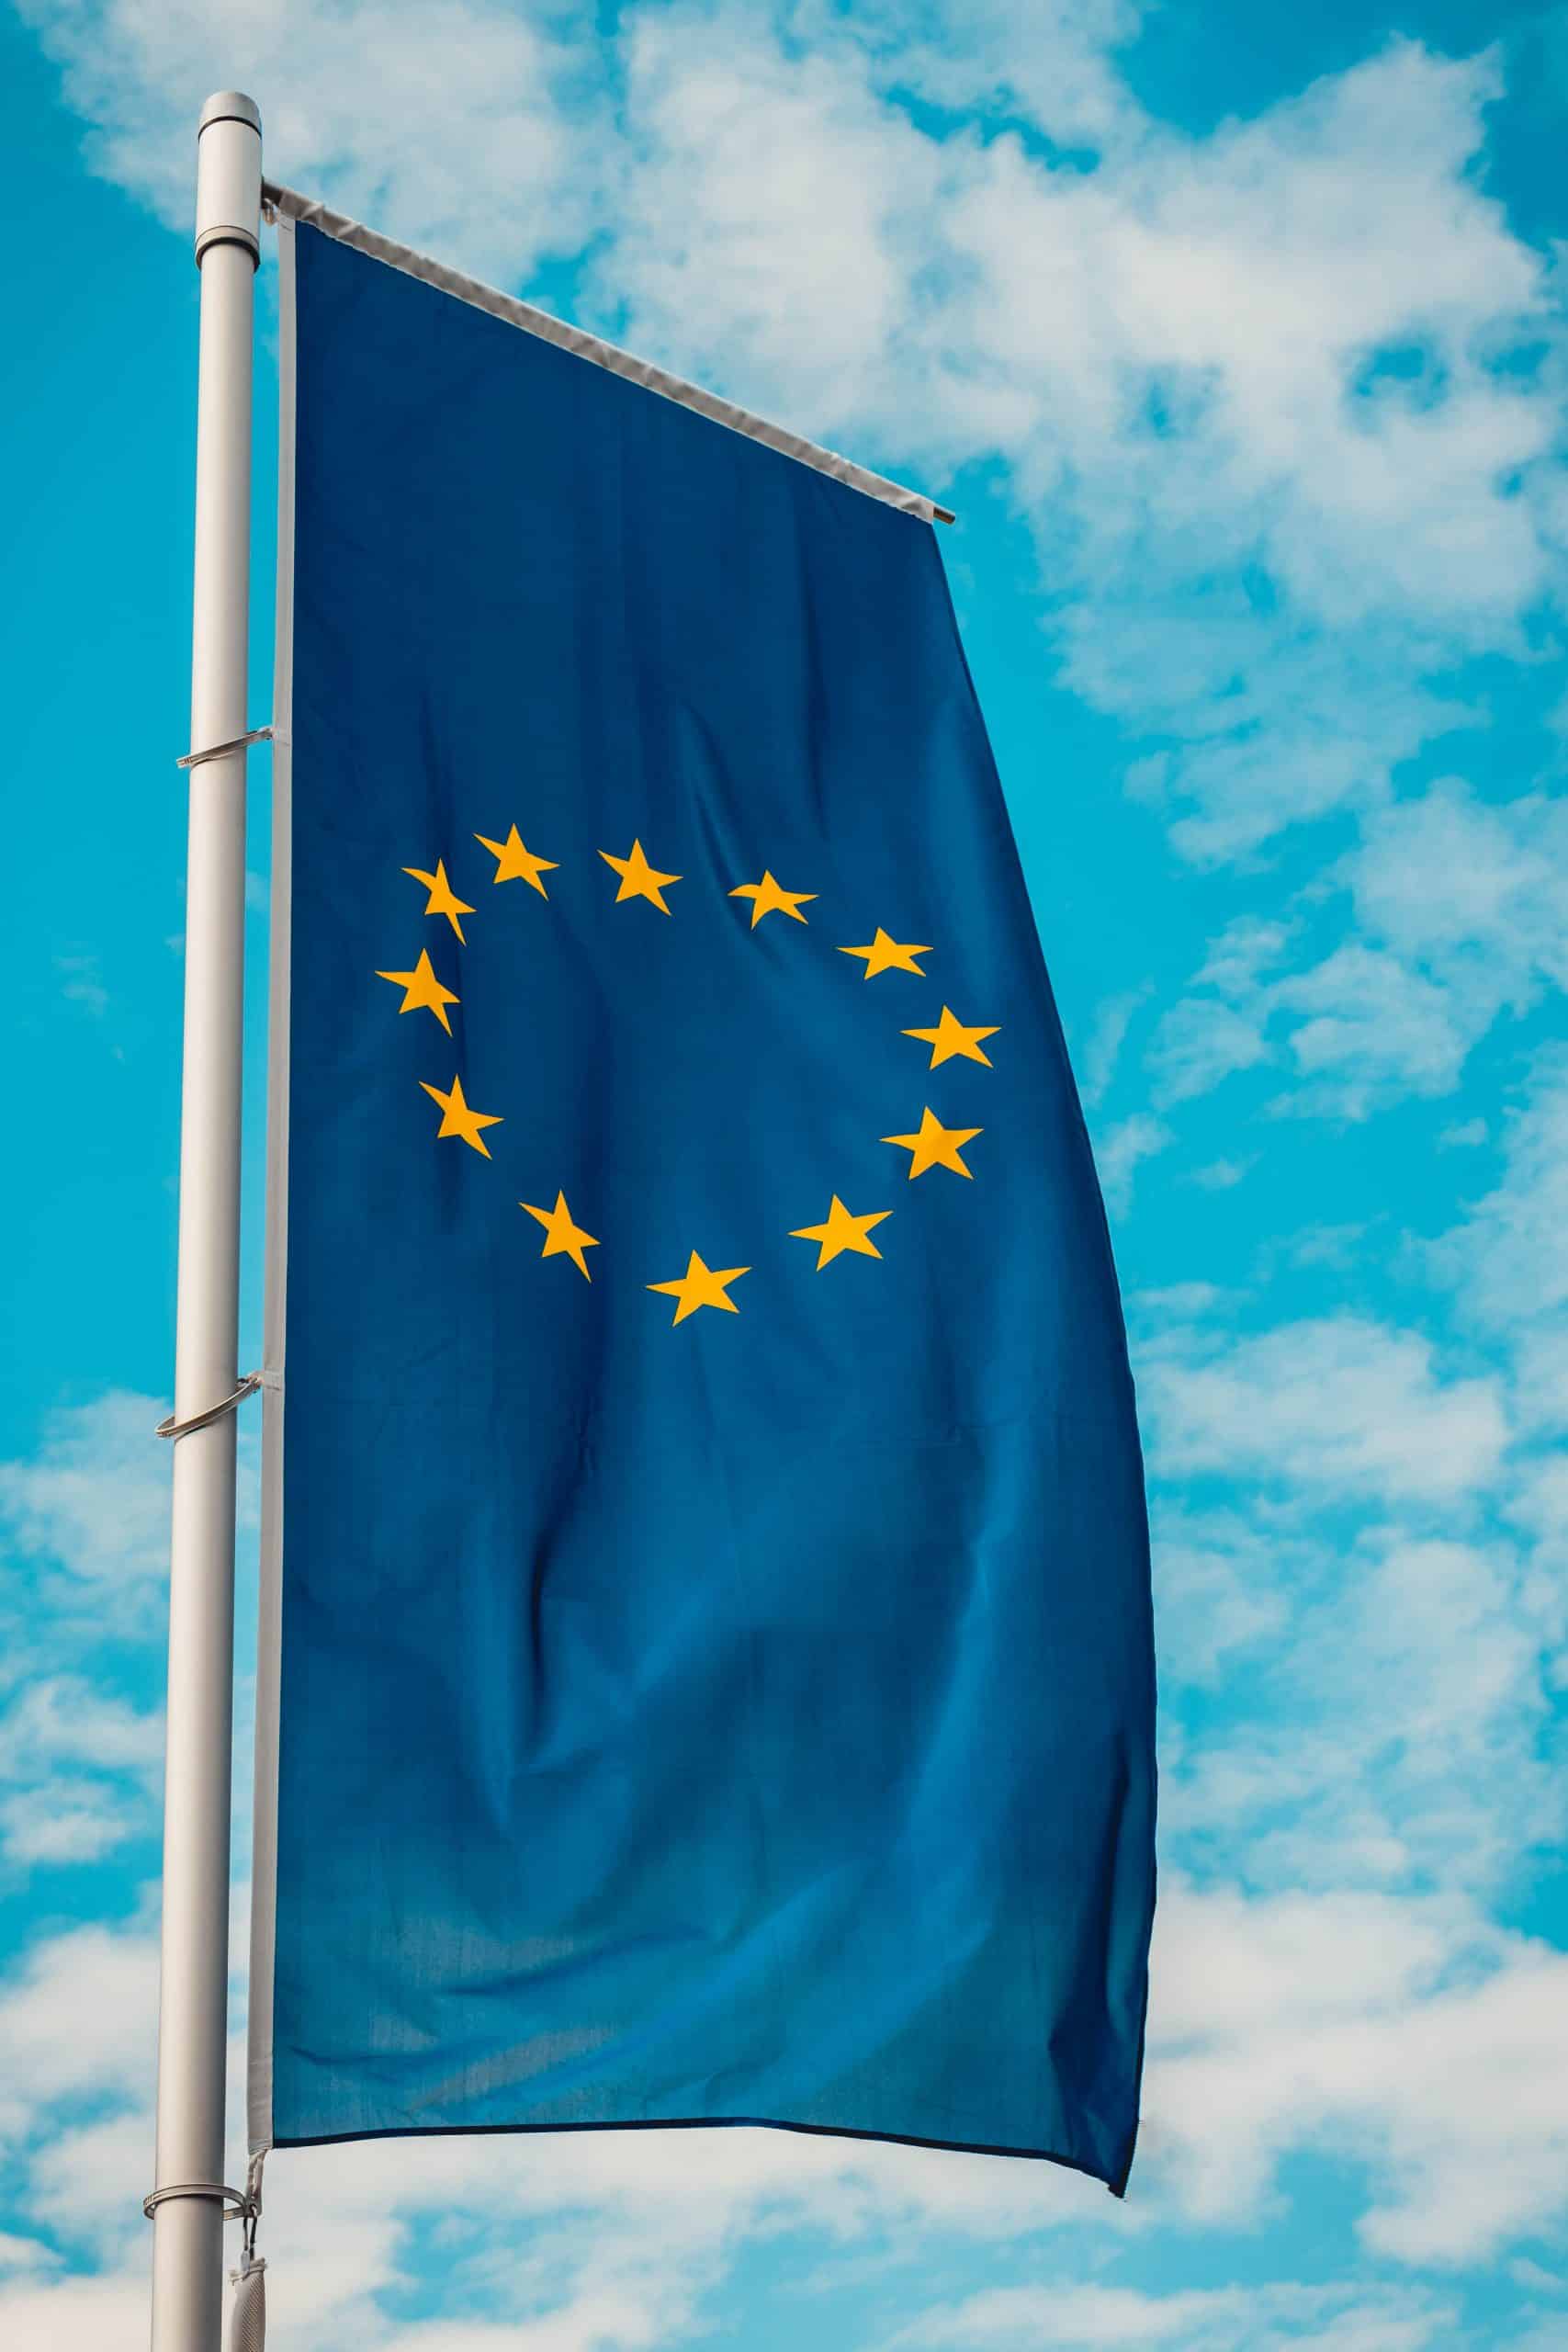 le drapeau européen flottant dans l'air